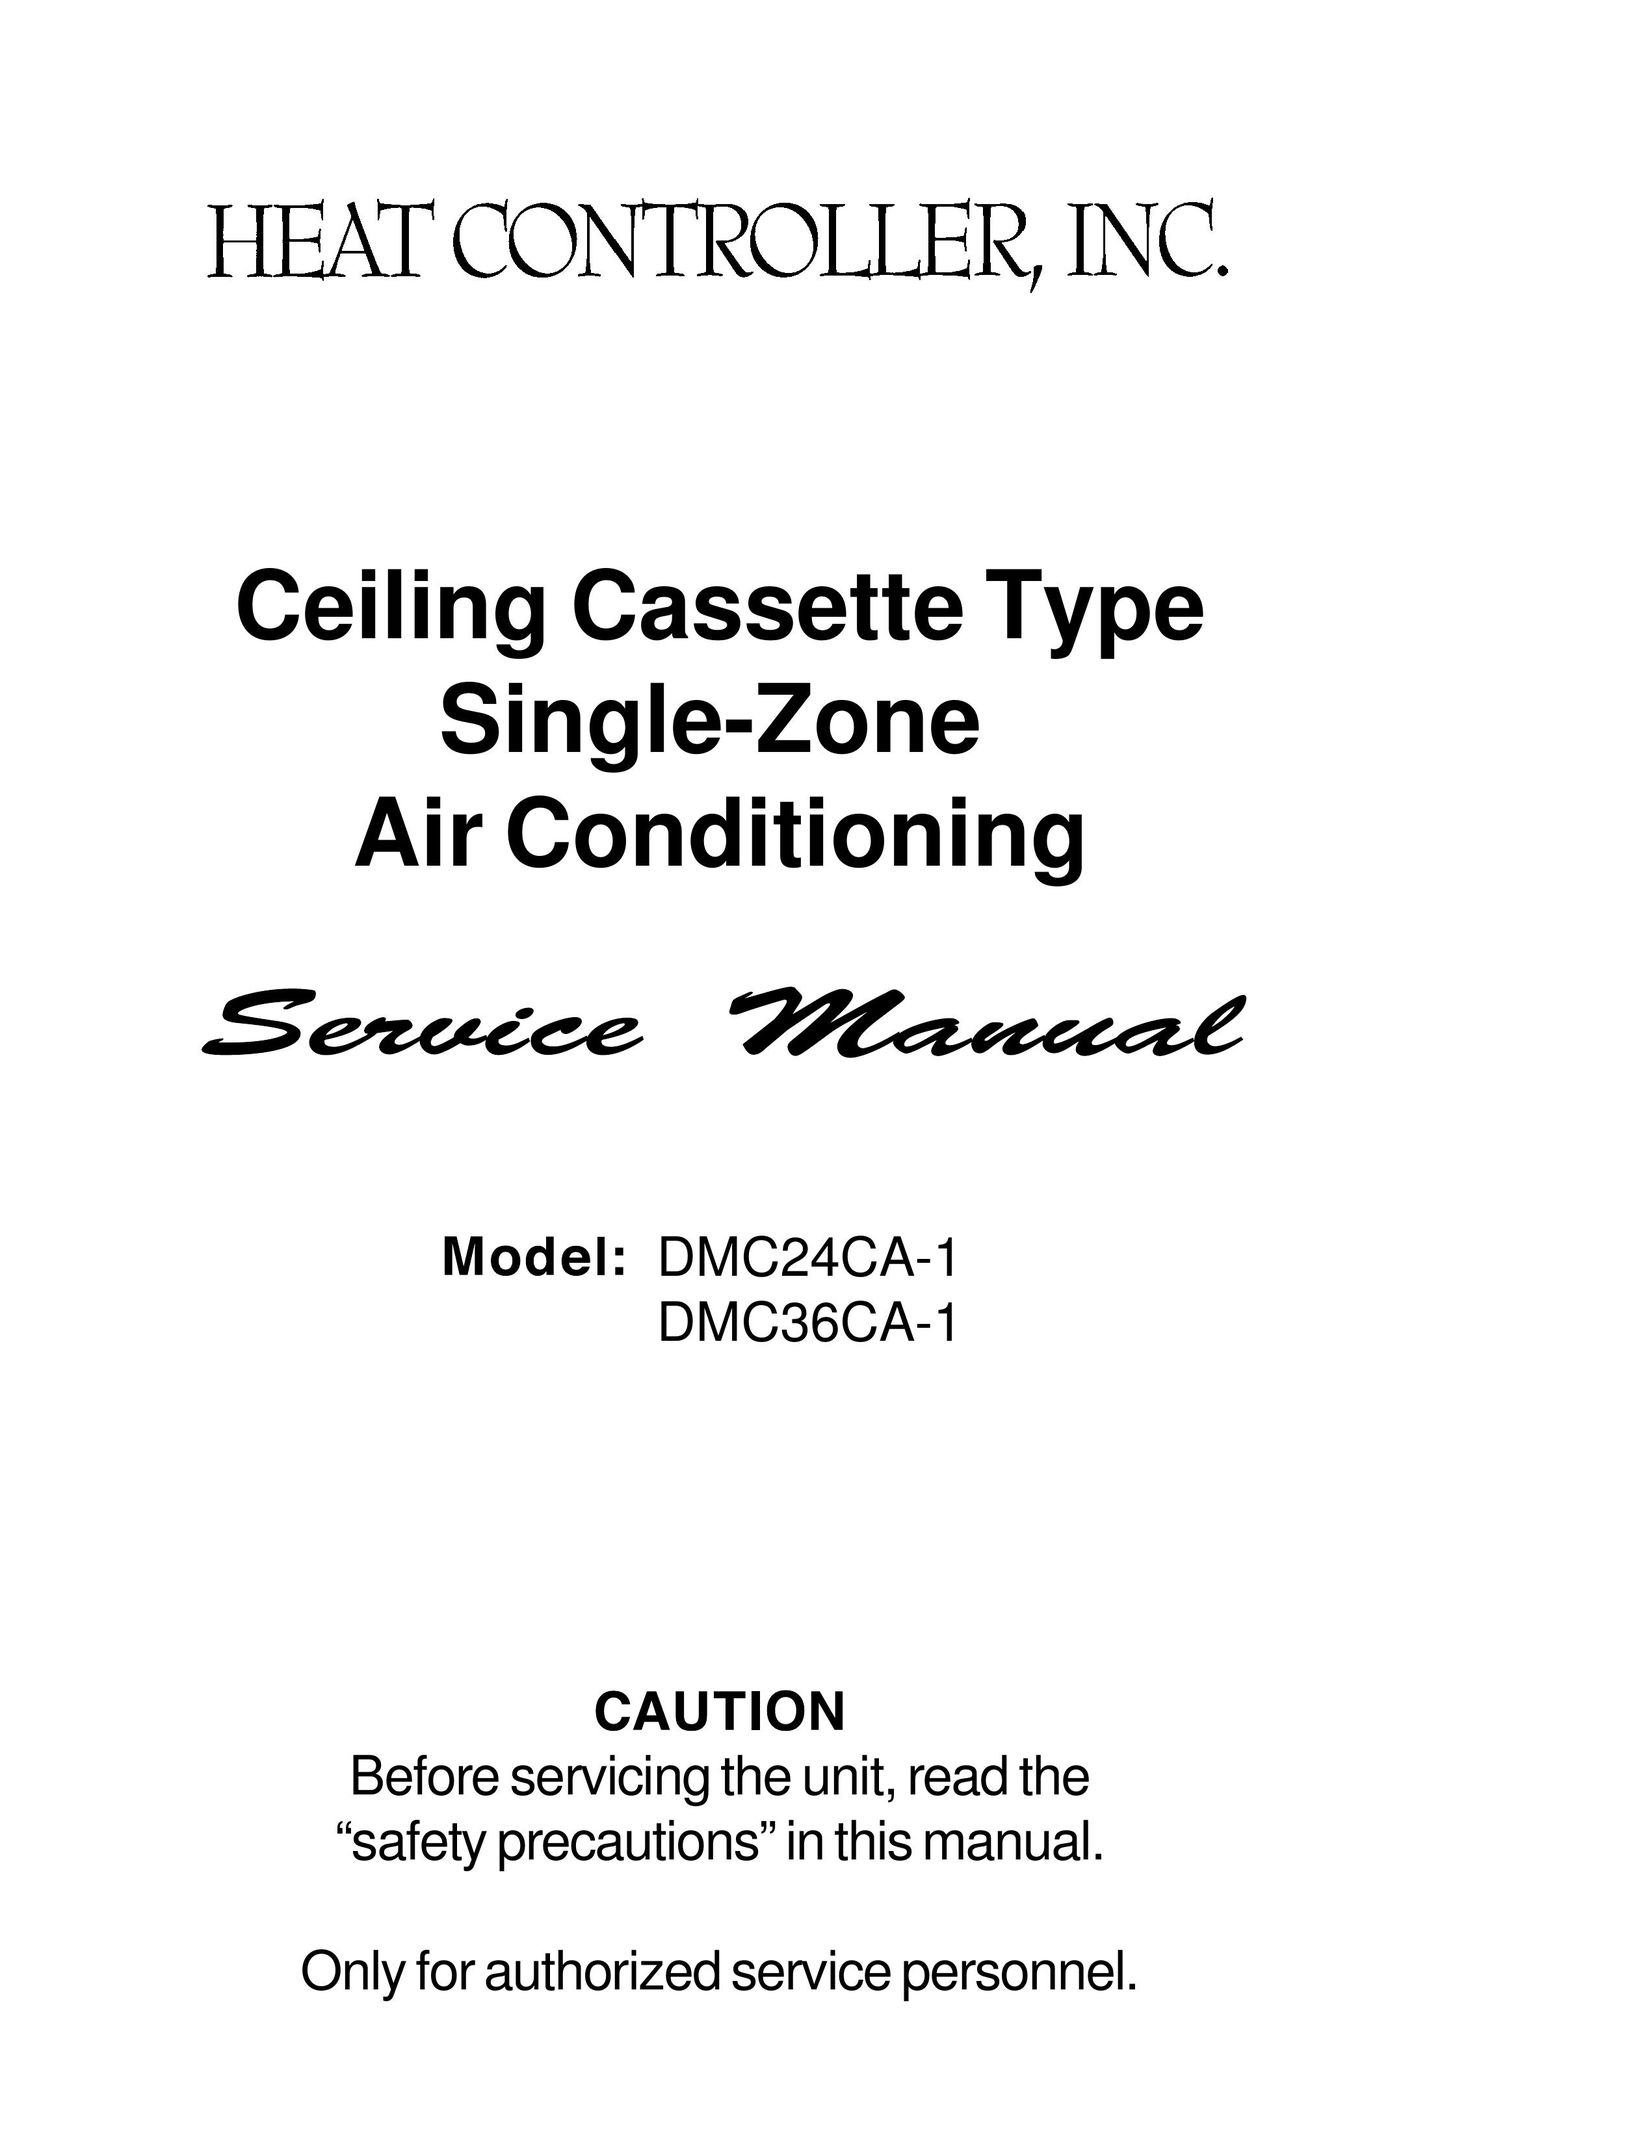 Heat Controller DMC24CA-1 Air Conditioner User Manual